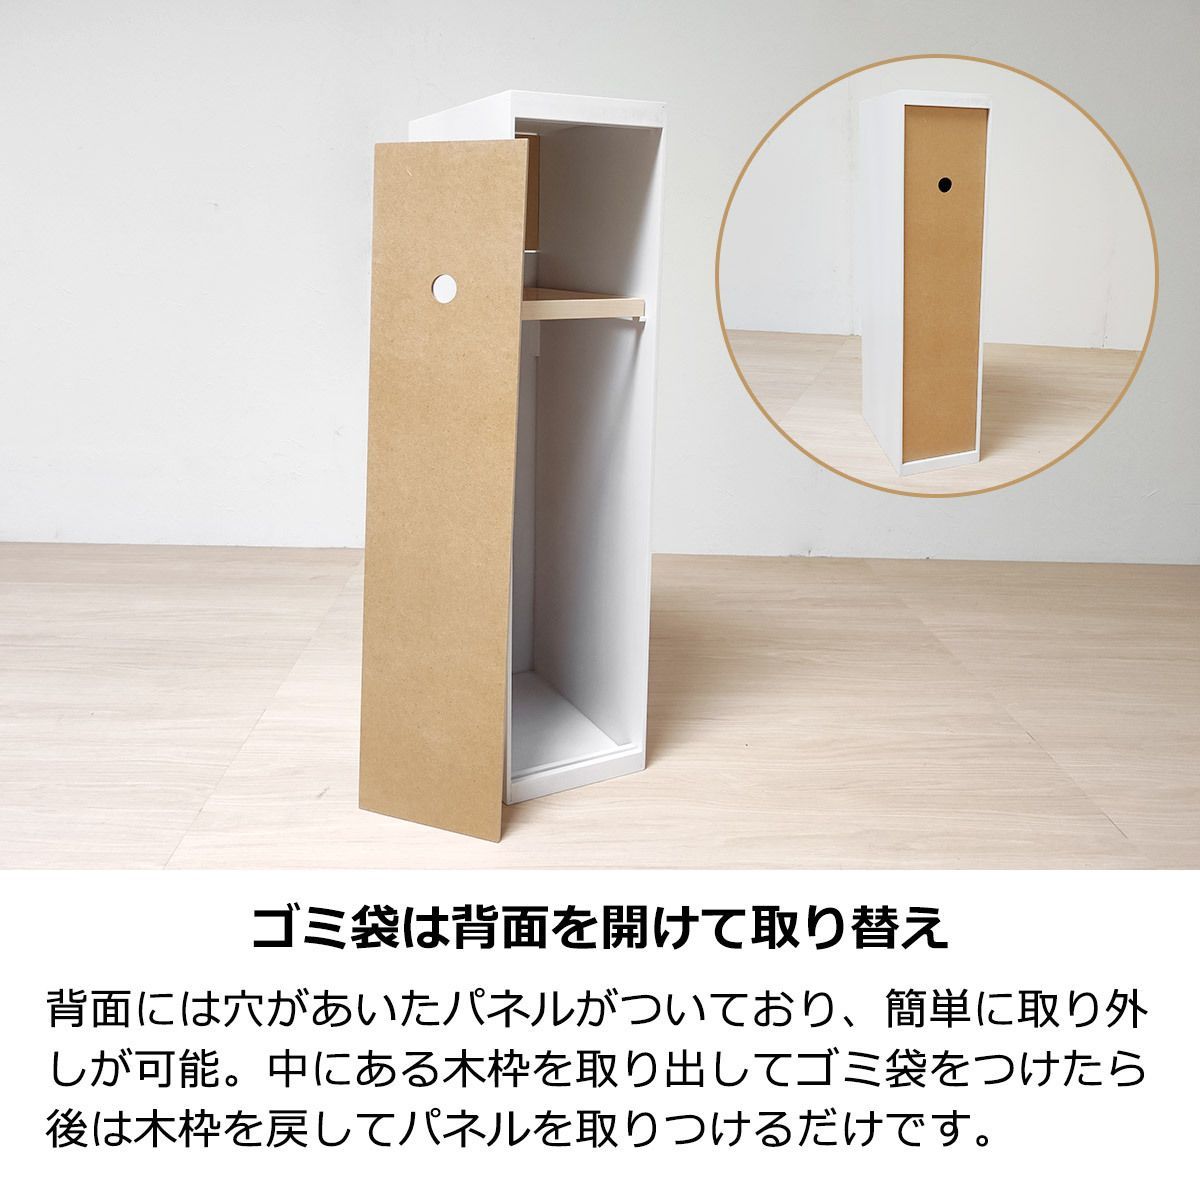 ヤマト工芸 DOORS -mini- 木製ダストボックス 8L ブラウン YK12-105-Br